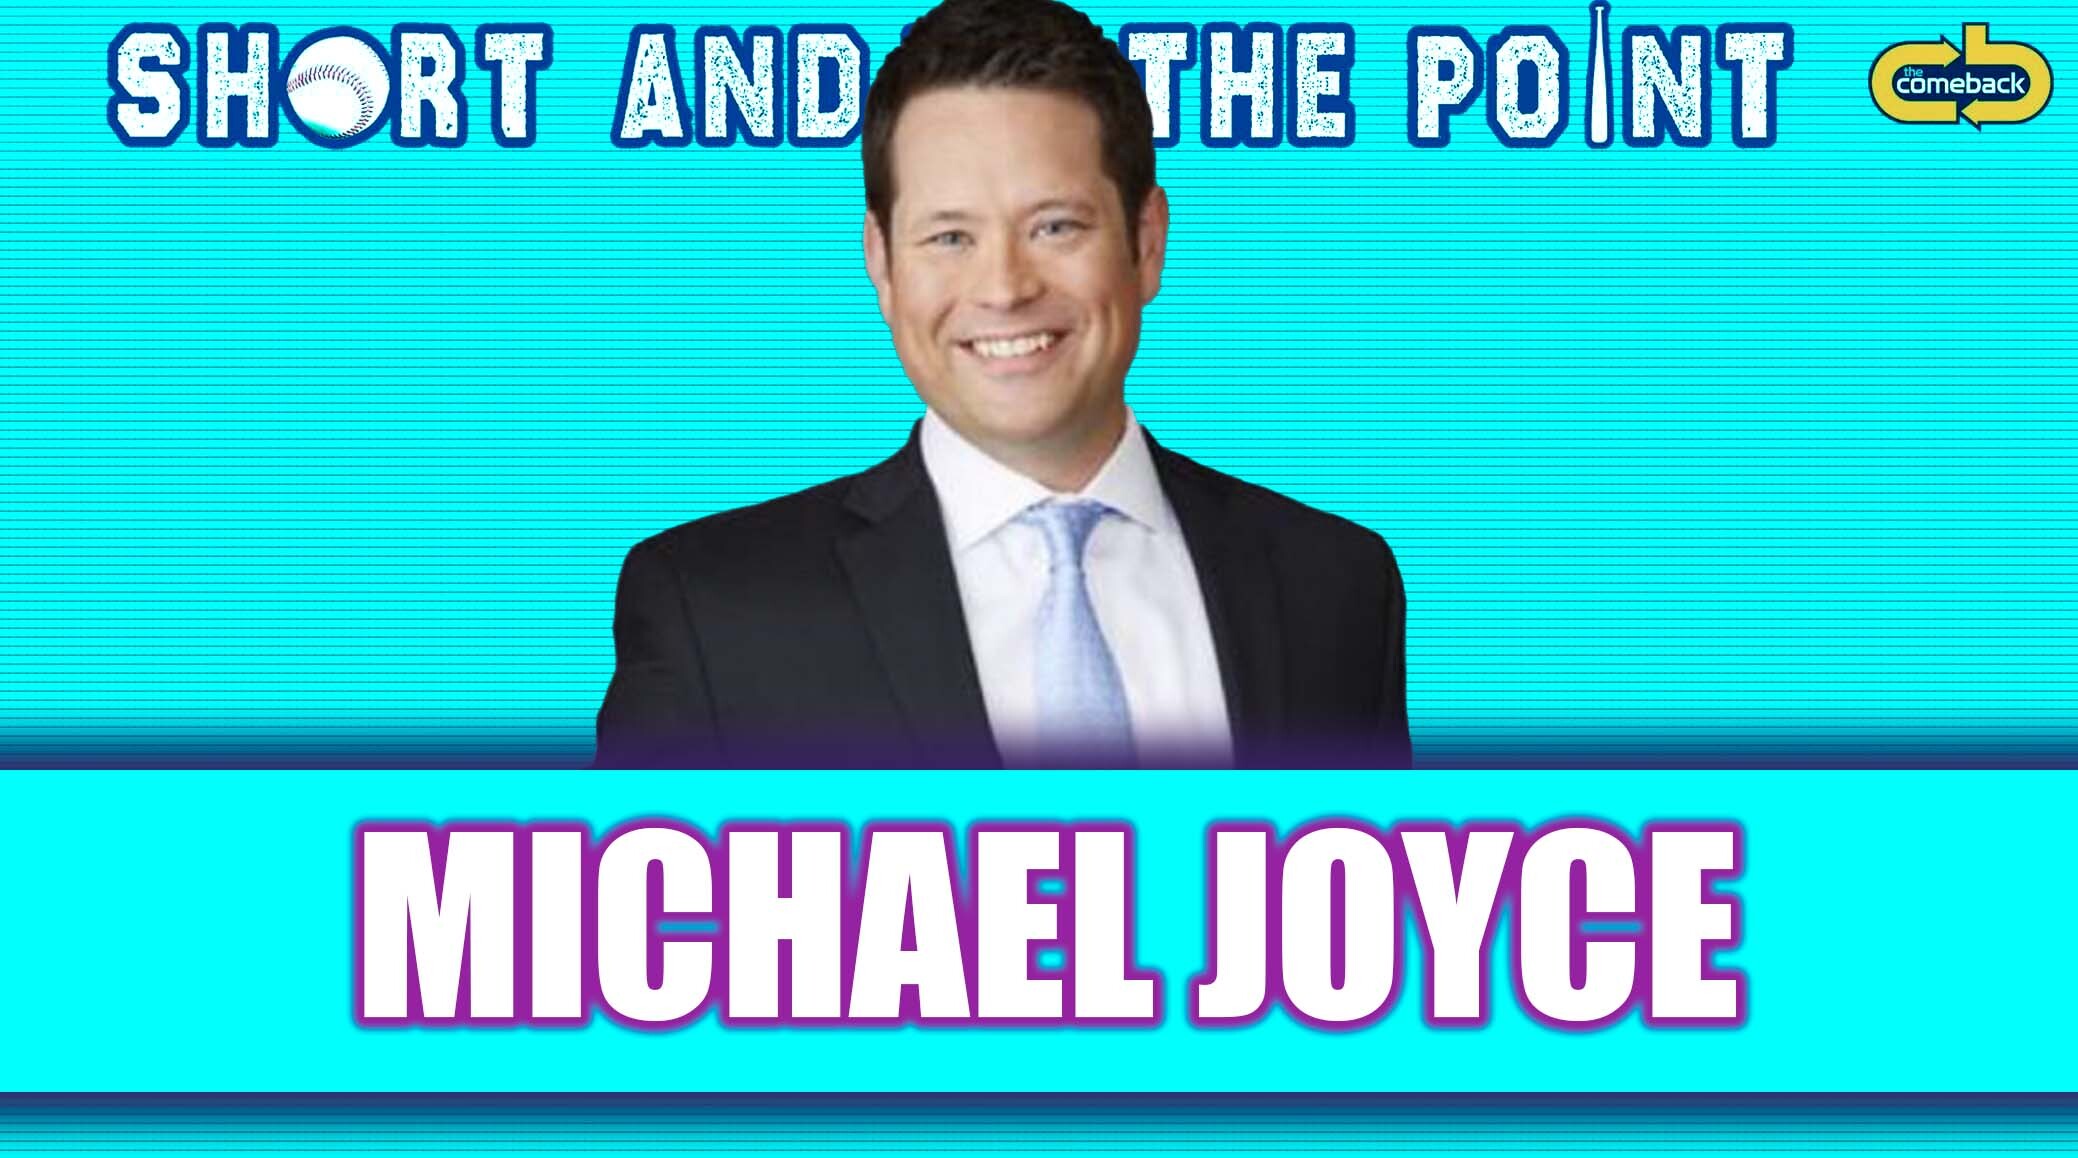 Michael Joyce